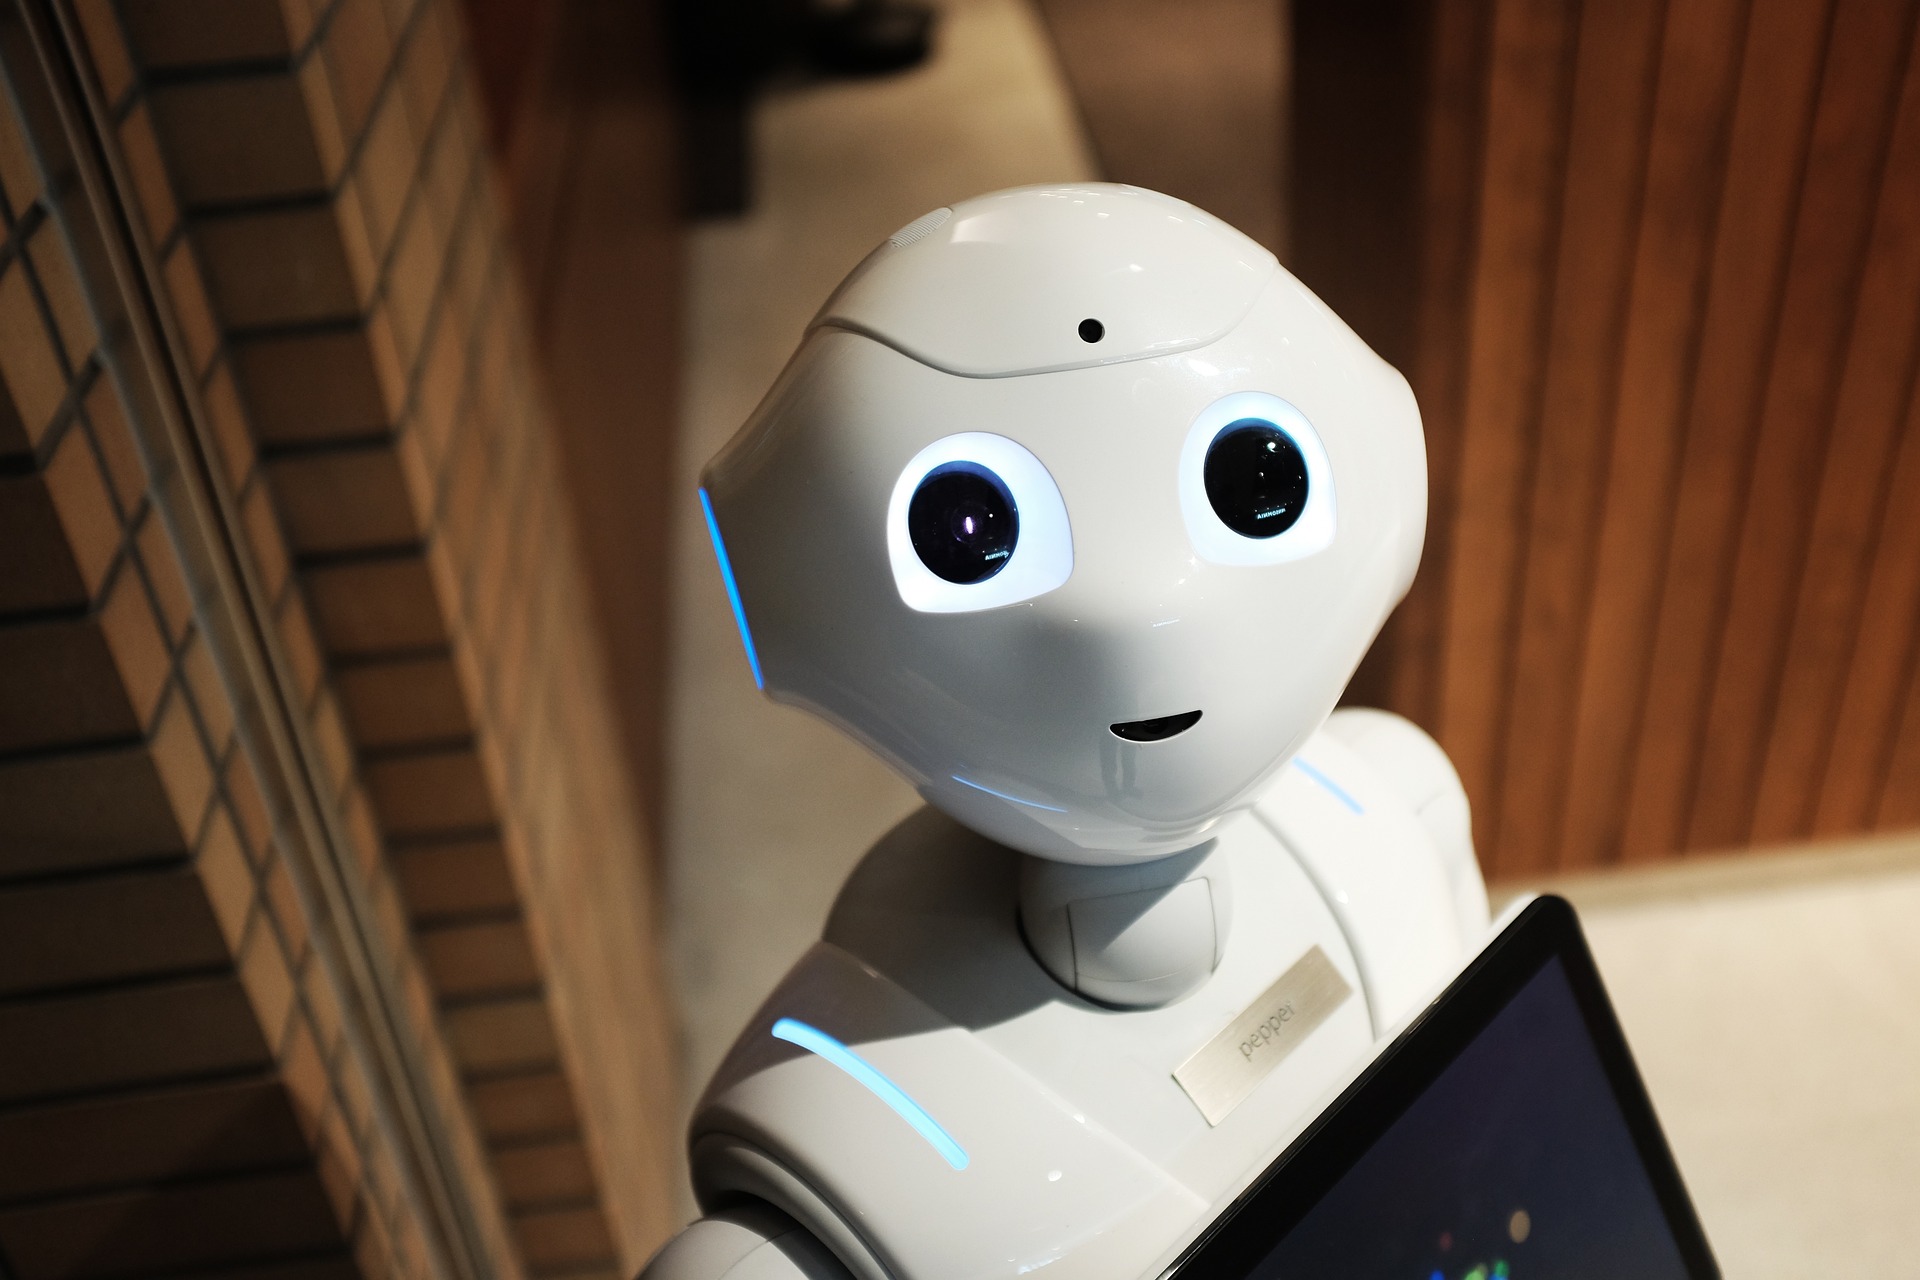 No tiene forma humanoide como este, pero el robot ChatGPT responde a tus preguntas sobre cualquier tema como si fuera una persona